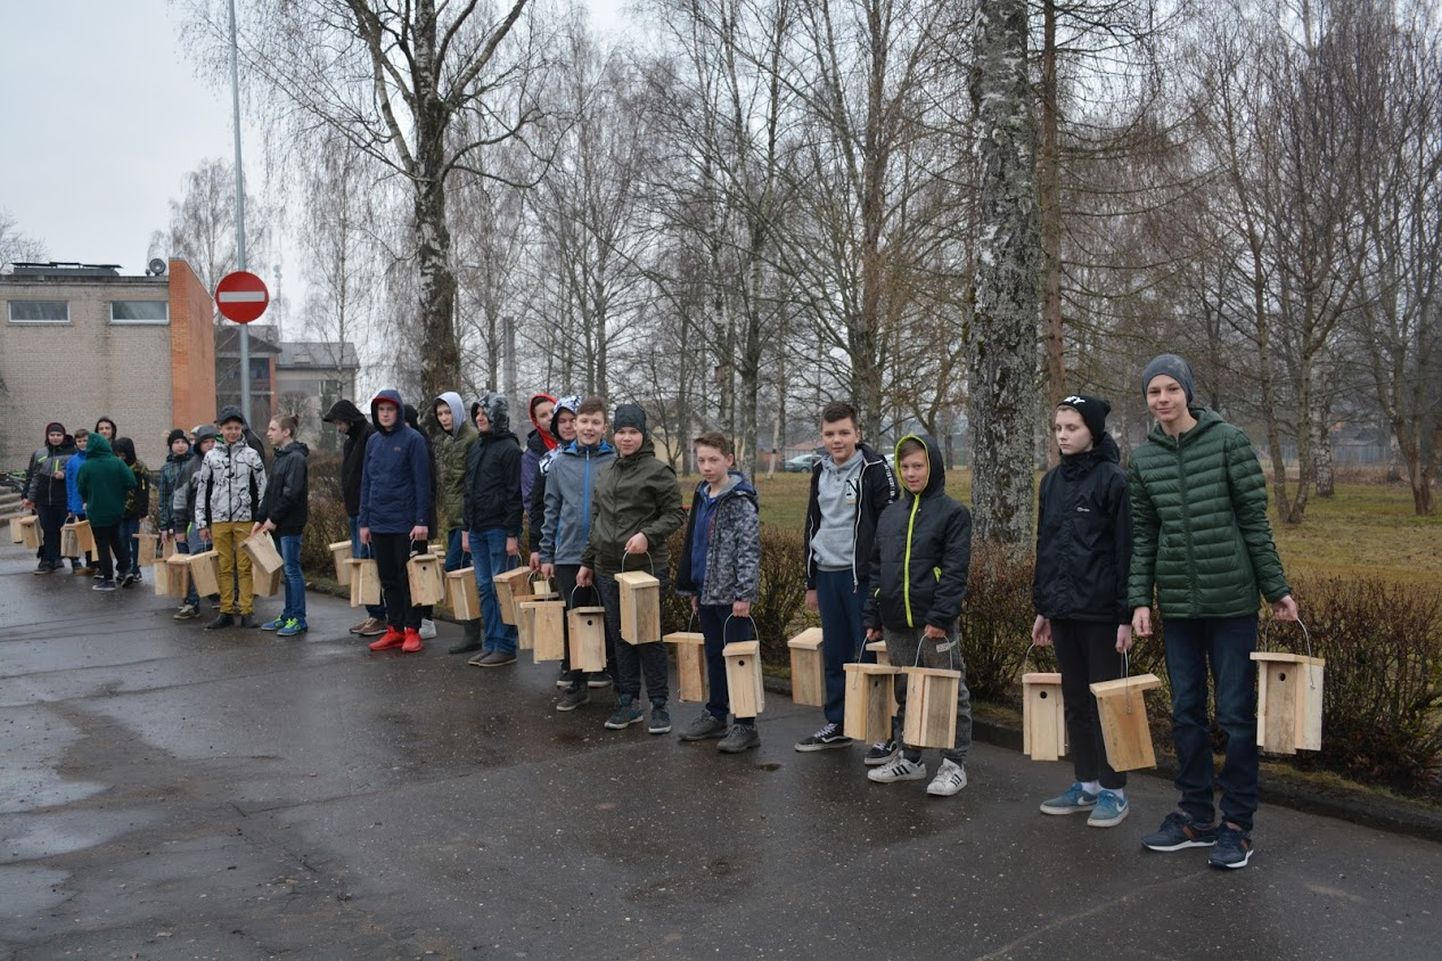 Priimetsa kooli õpilased valmistasid tööõpetuse tundides õpetaja Kalle Korneli juhendamisel 100 pesakasti lindudele.